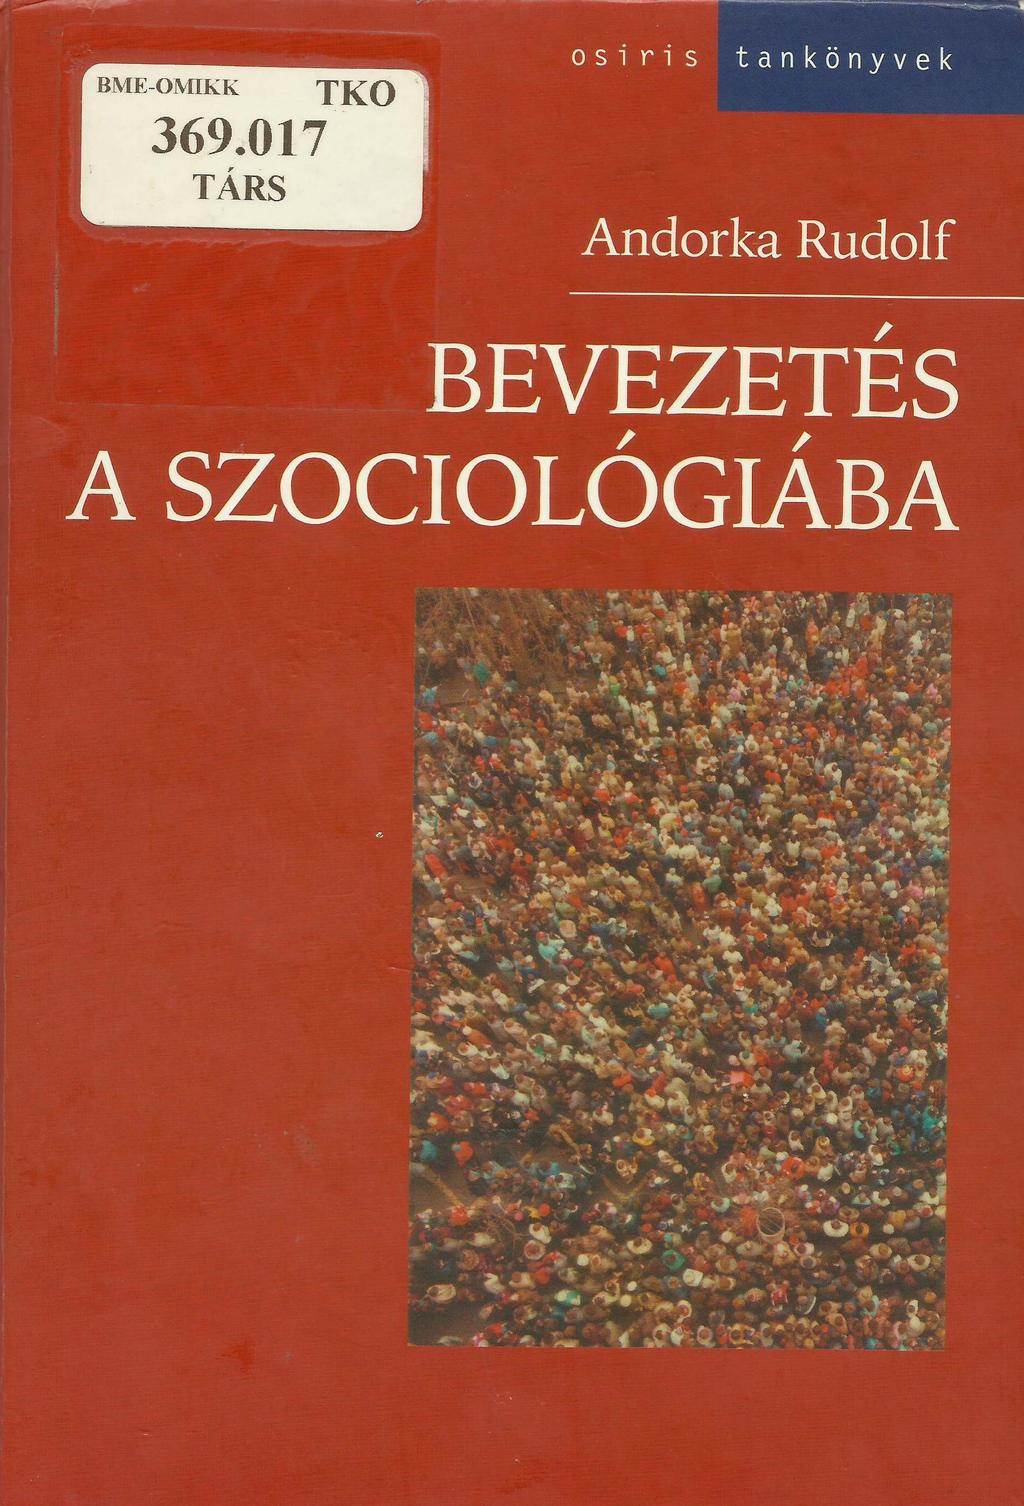 Tankönyvek példái Andorka Rudolf, Bevezetés a szociológiába, Osiris kiadó, Budapest, 2006. 124. old.